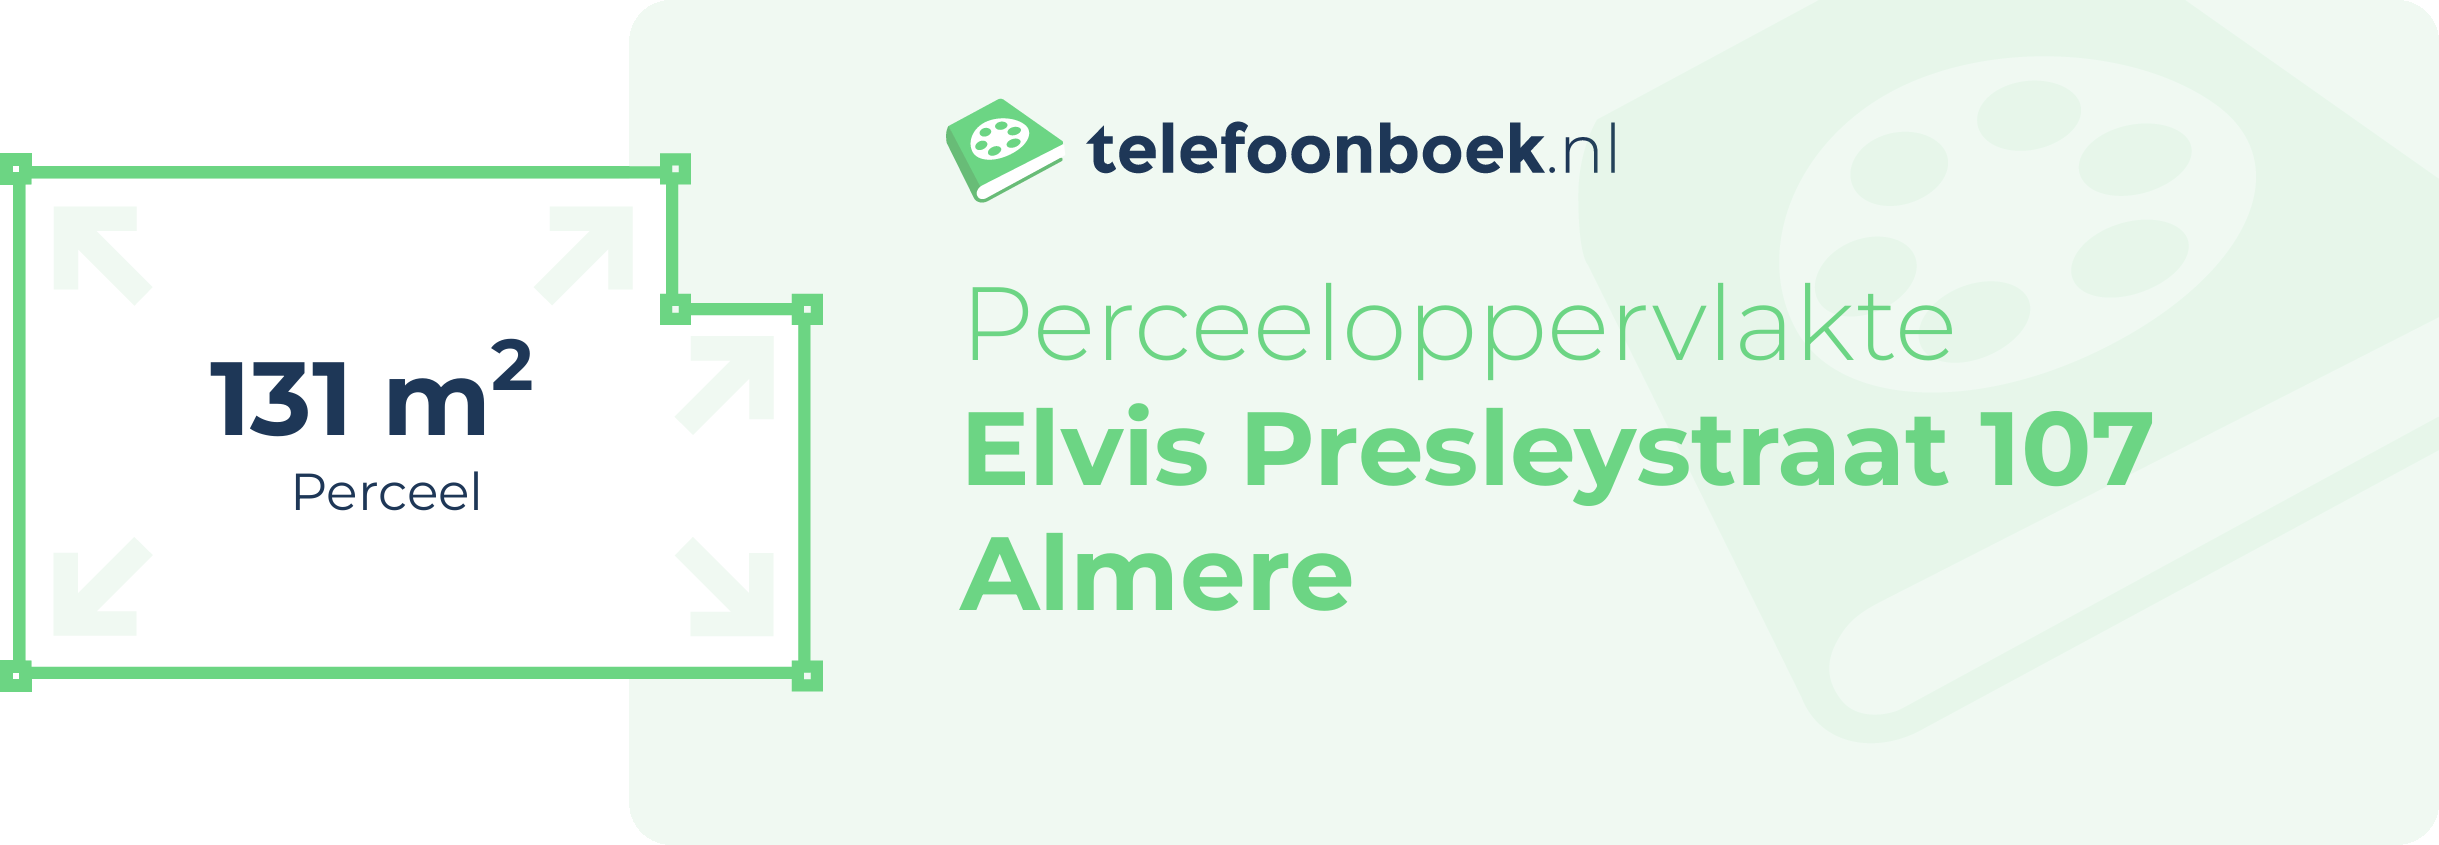 Perceeloppervlakte Elvis Presleystraat 107 Almere